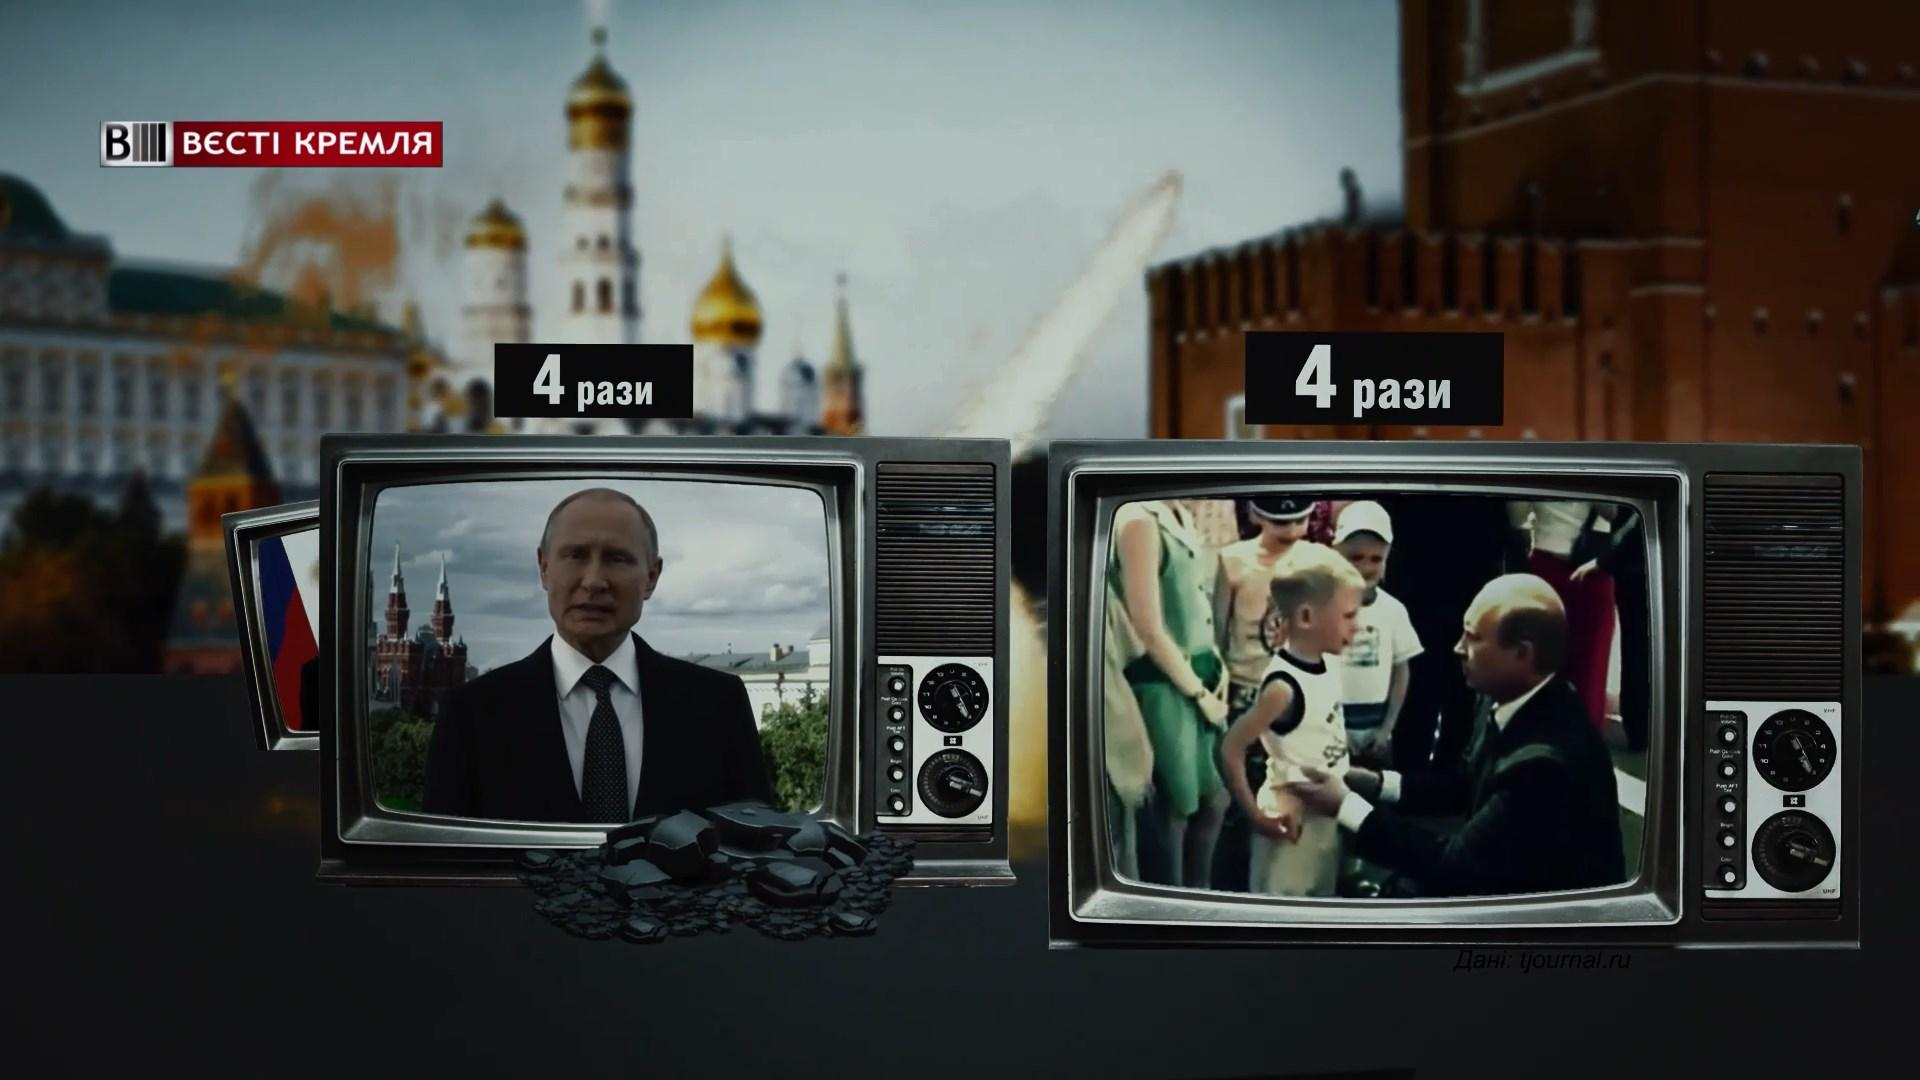 Сколько видеообращений совершил Путин во время президентского правления: ошеломляющая цифра